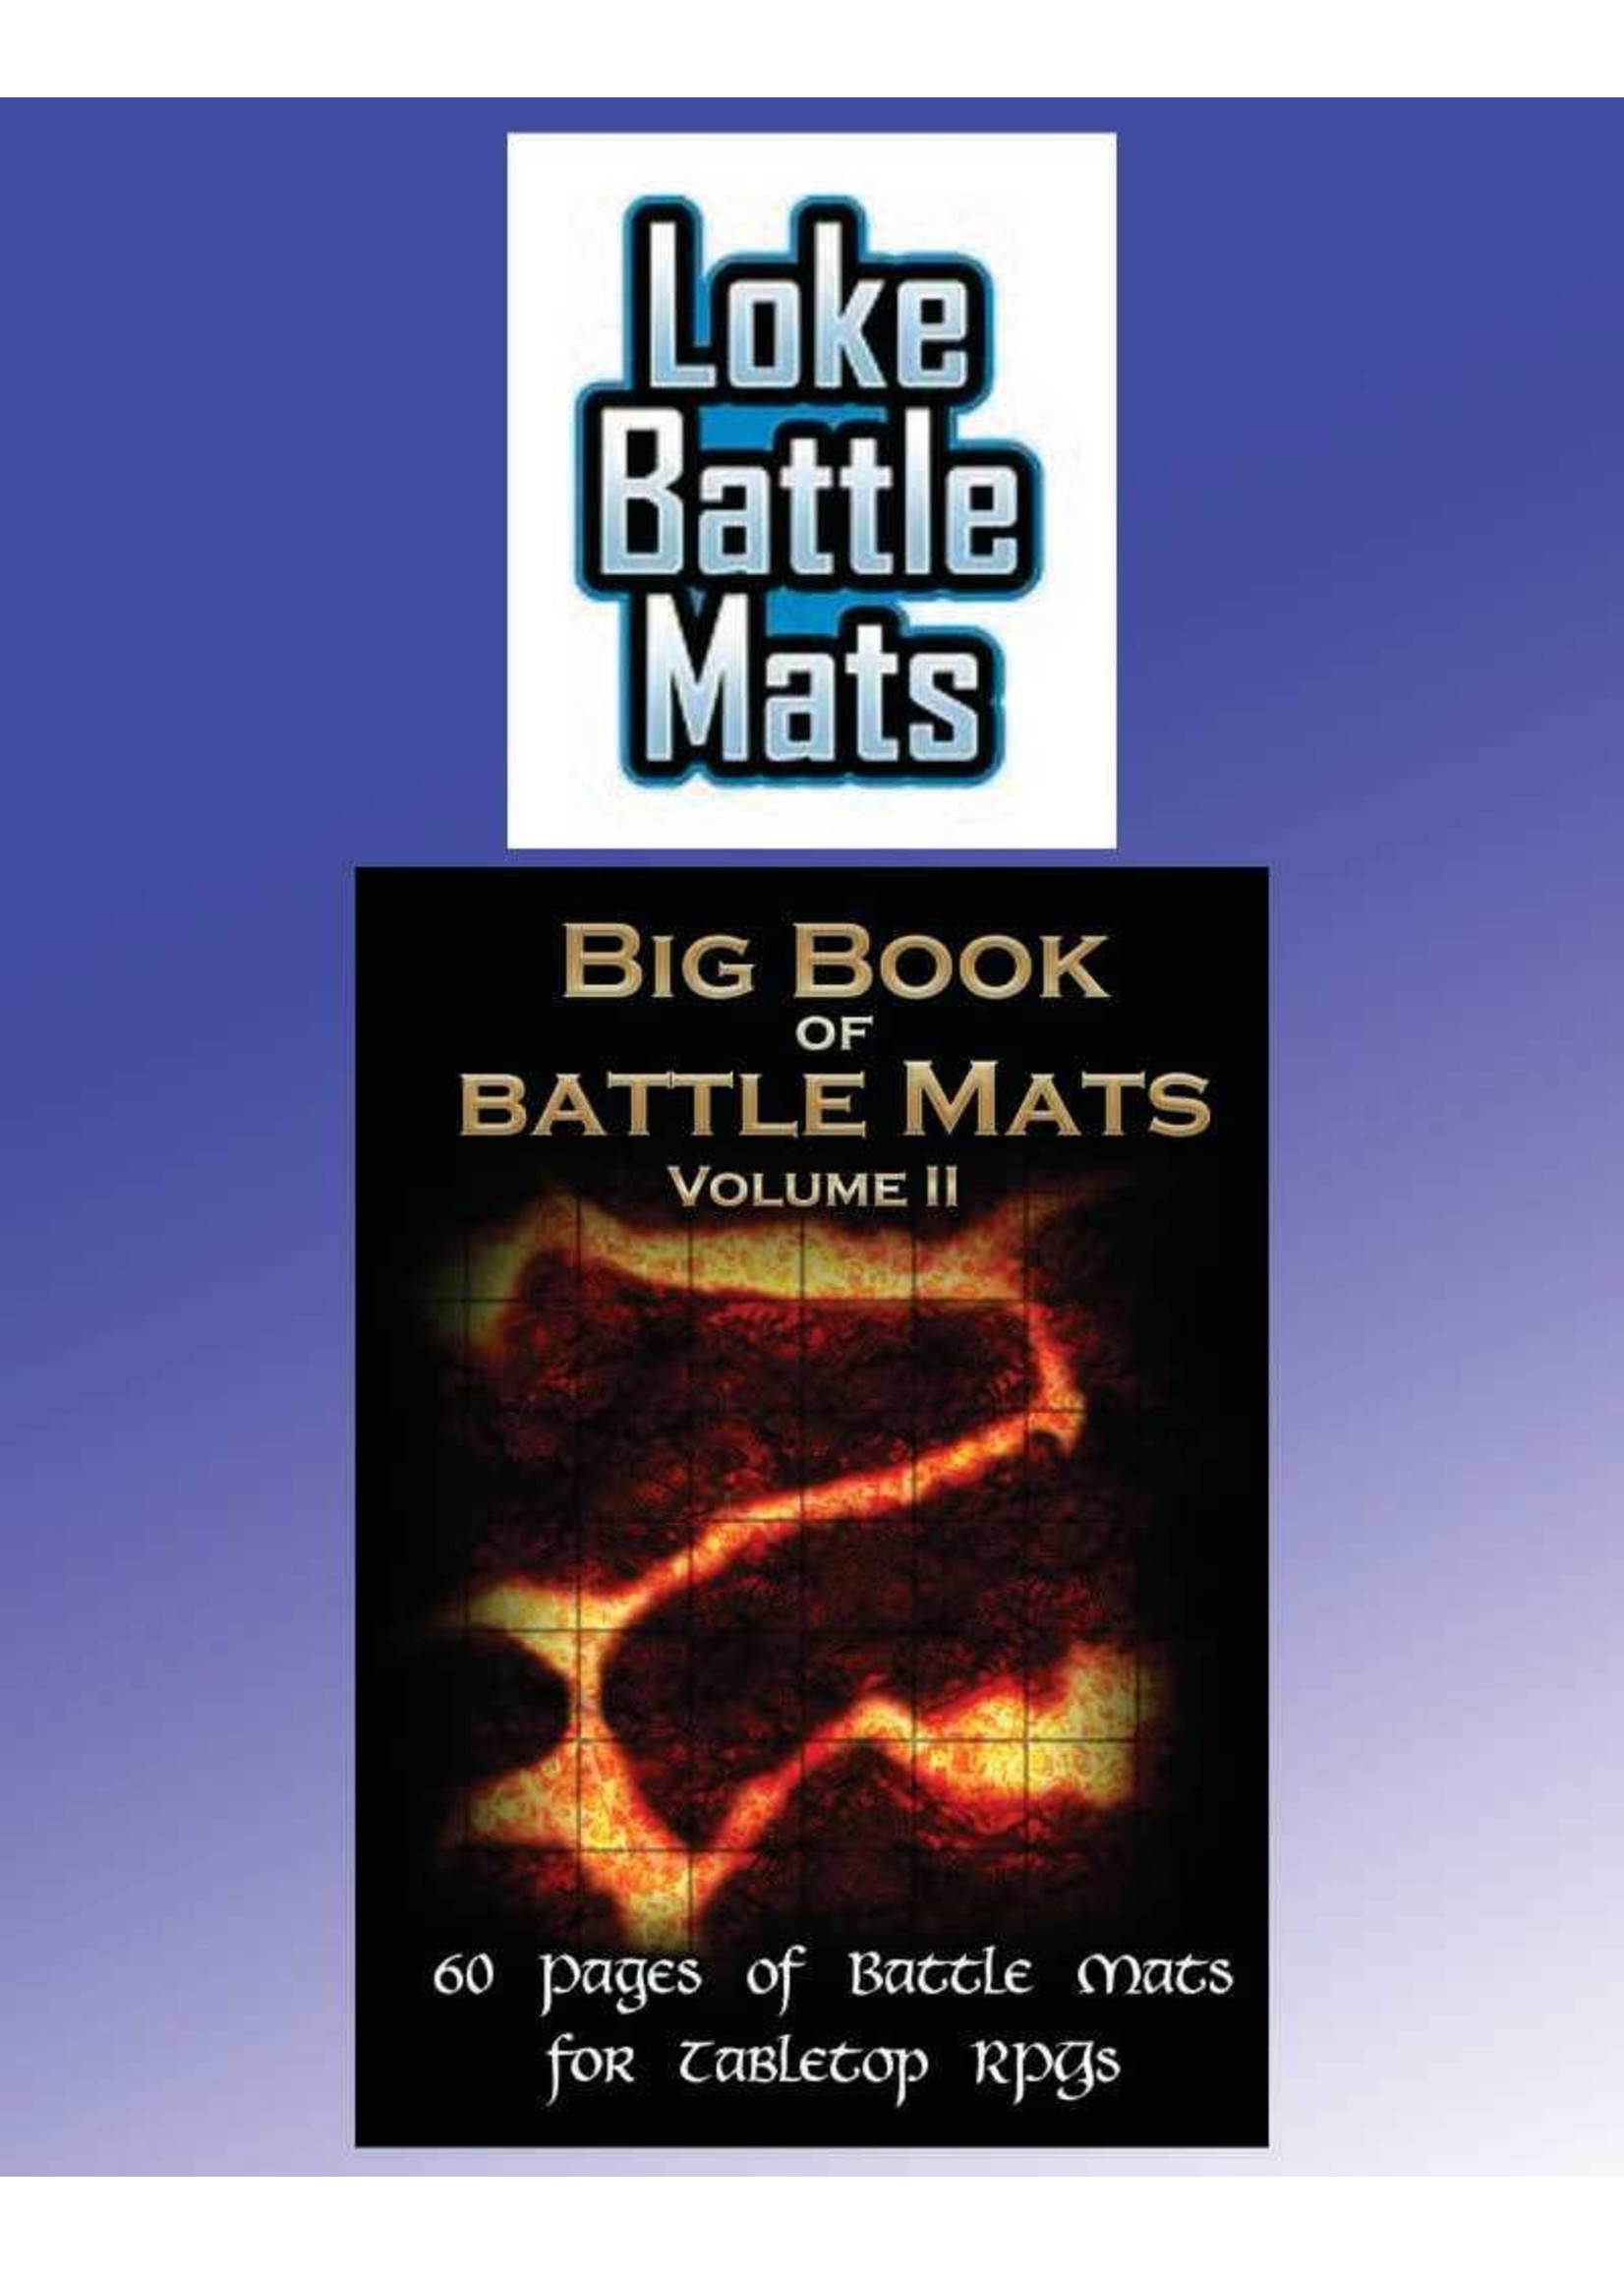 Loke Battle Mats Big Book of Battle Mats Volume 2